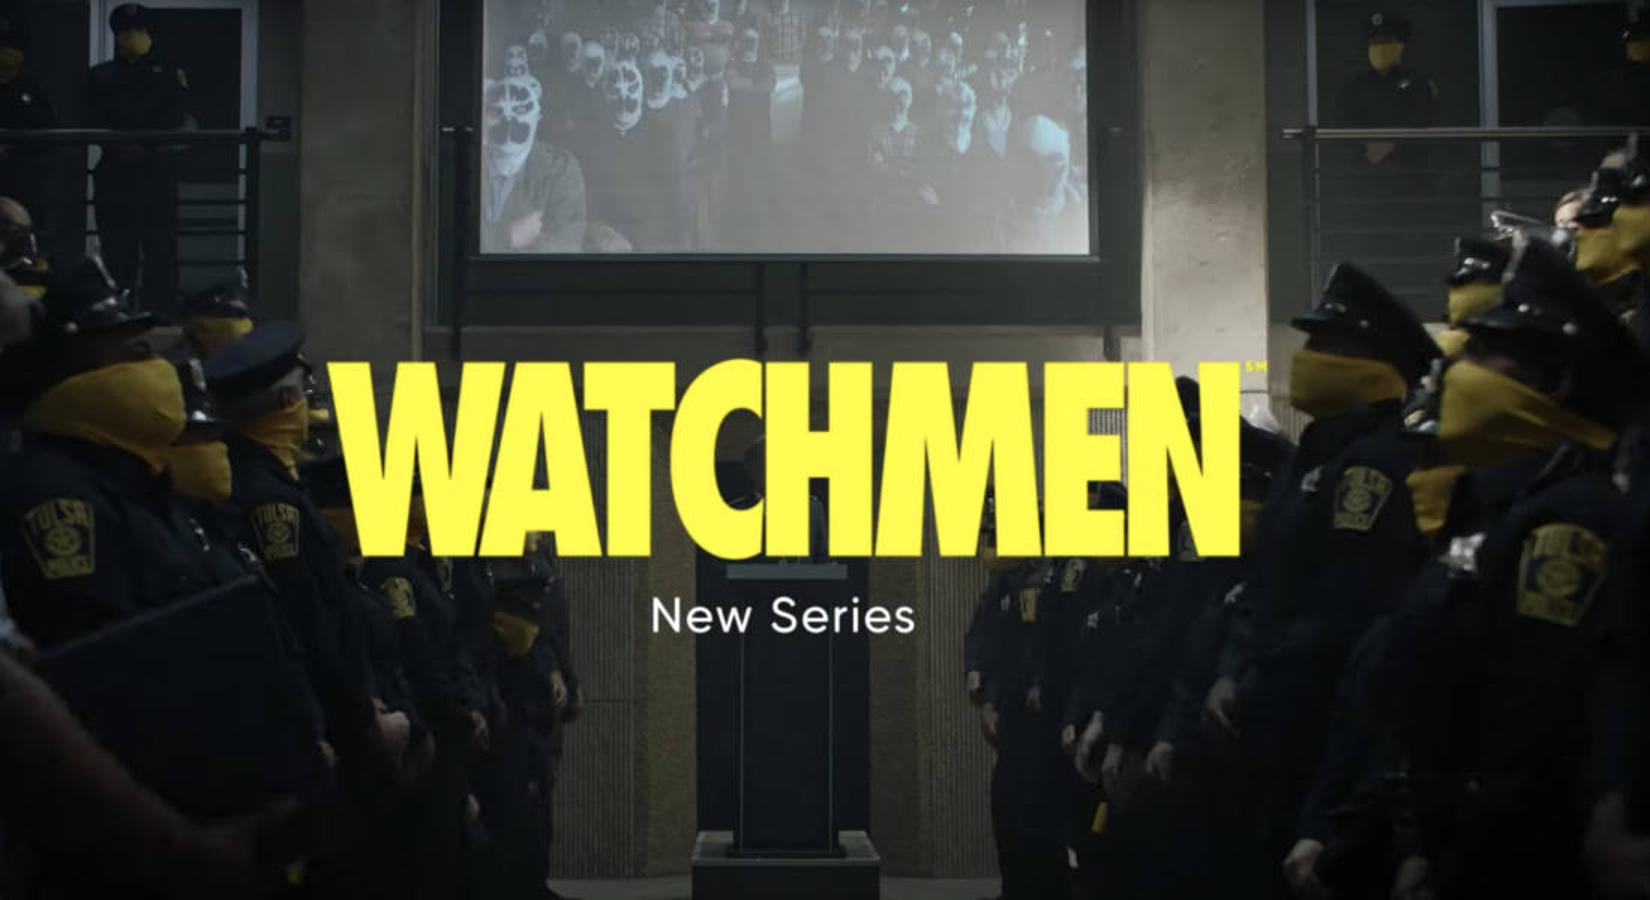 WATCHMEN (HBO - 21 de octubre). Es una extensión de la historia original gráfica creada por Alan Moore y Dave Gibbons.